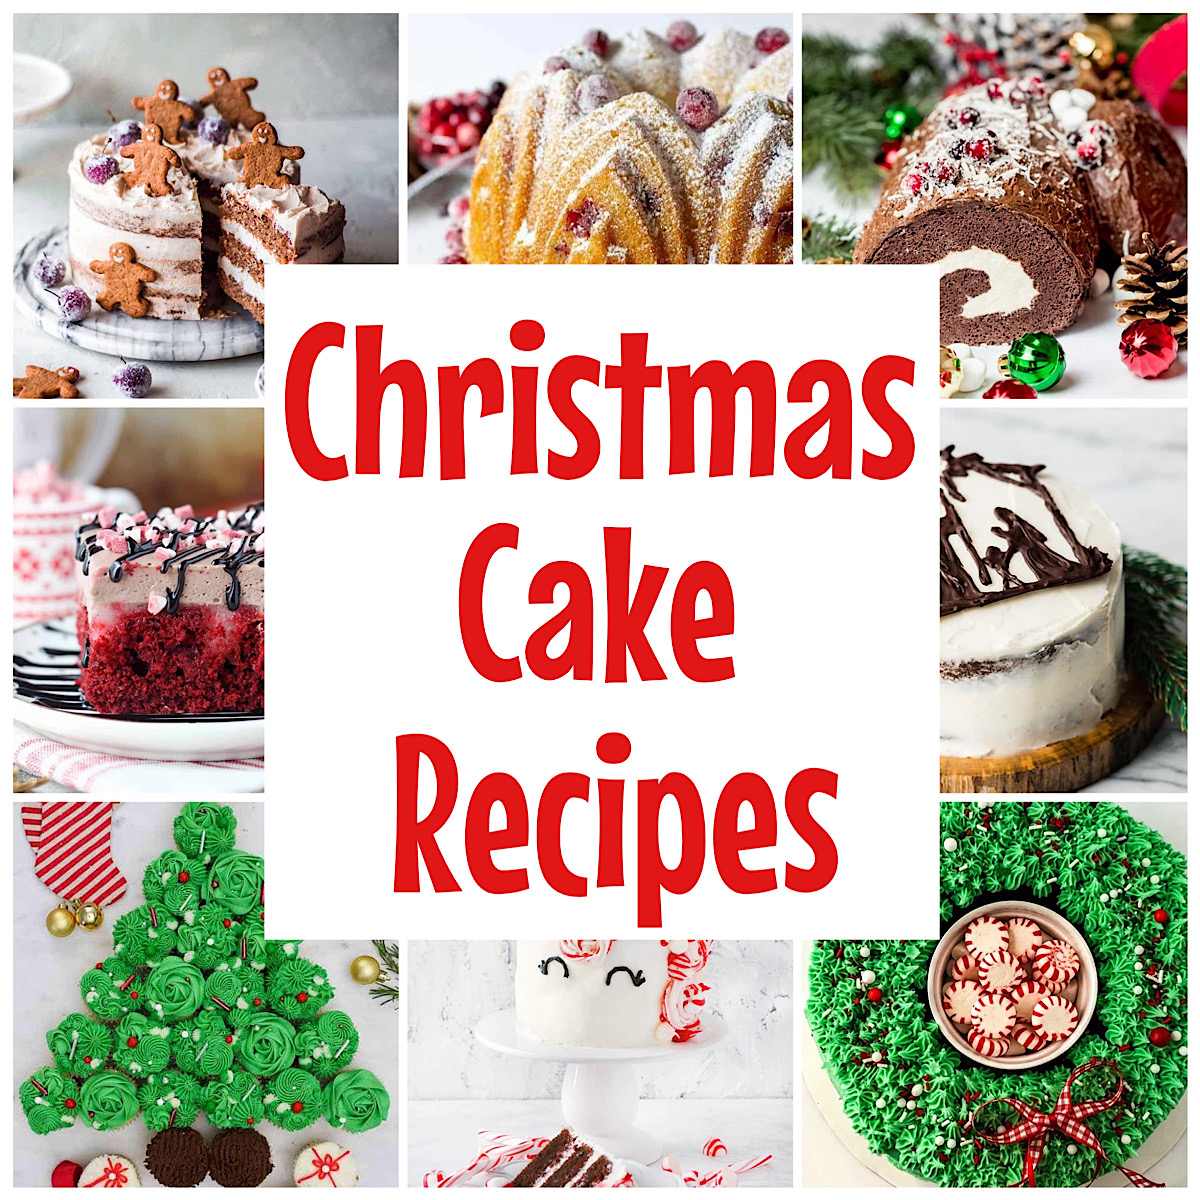 Grandma's Best Christmas Cake Recipe - Food.com